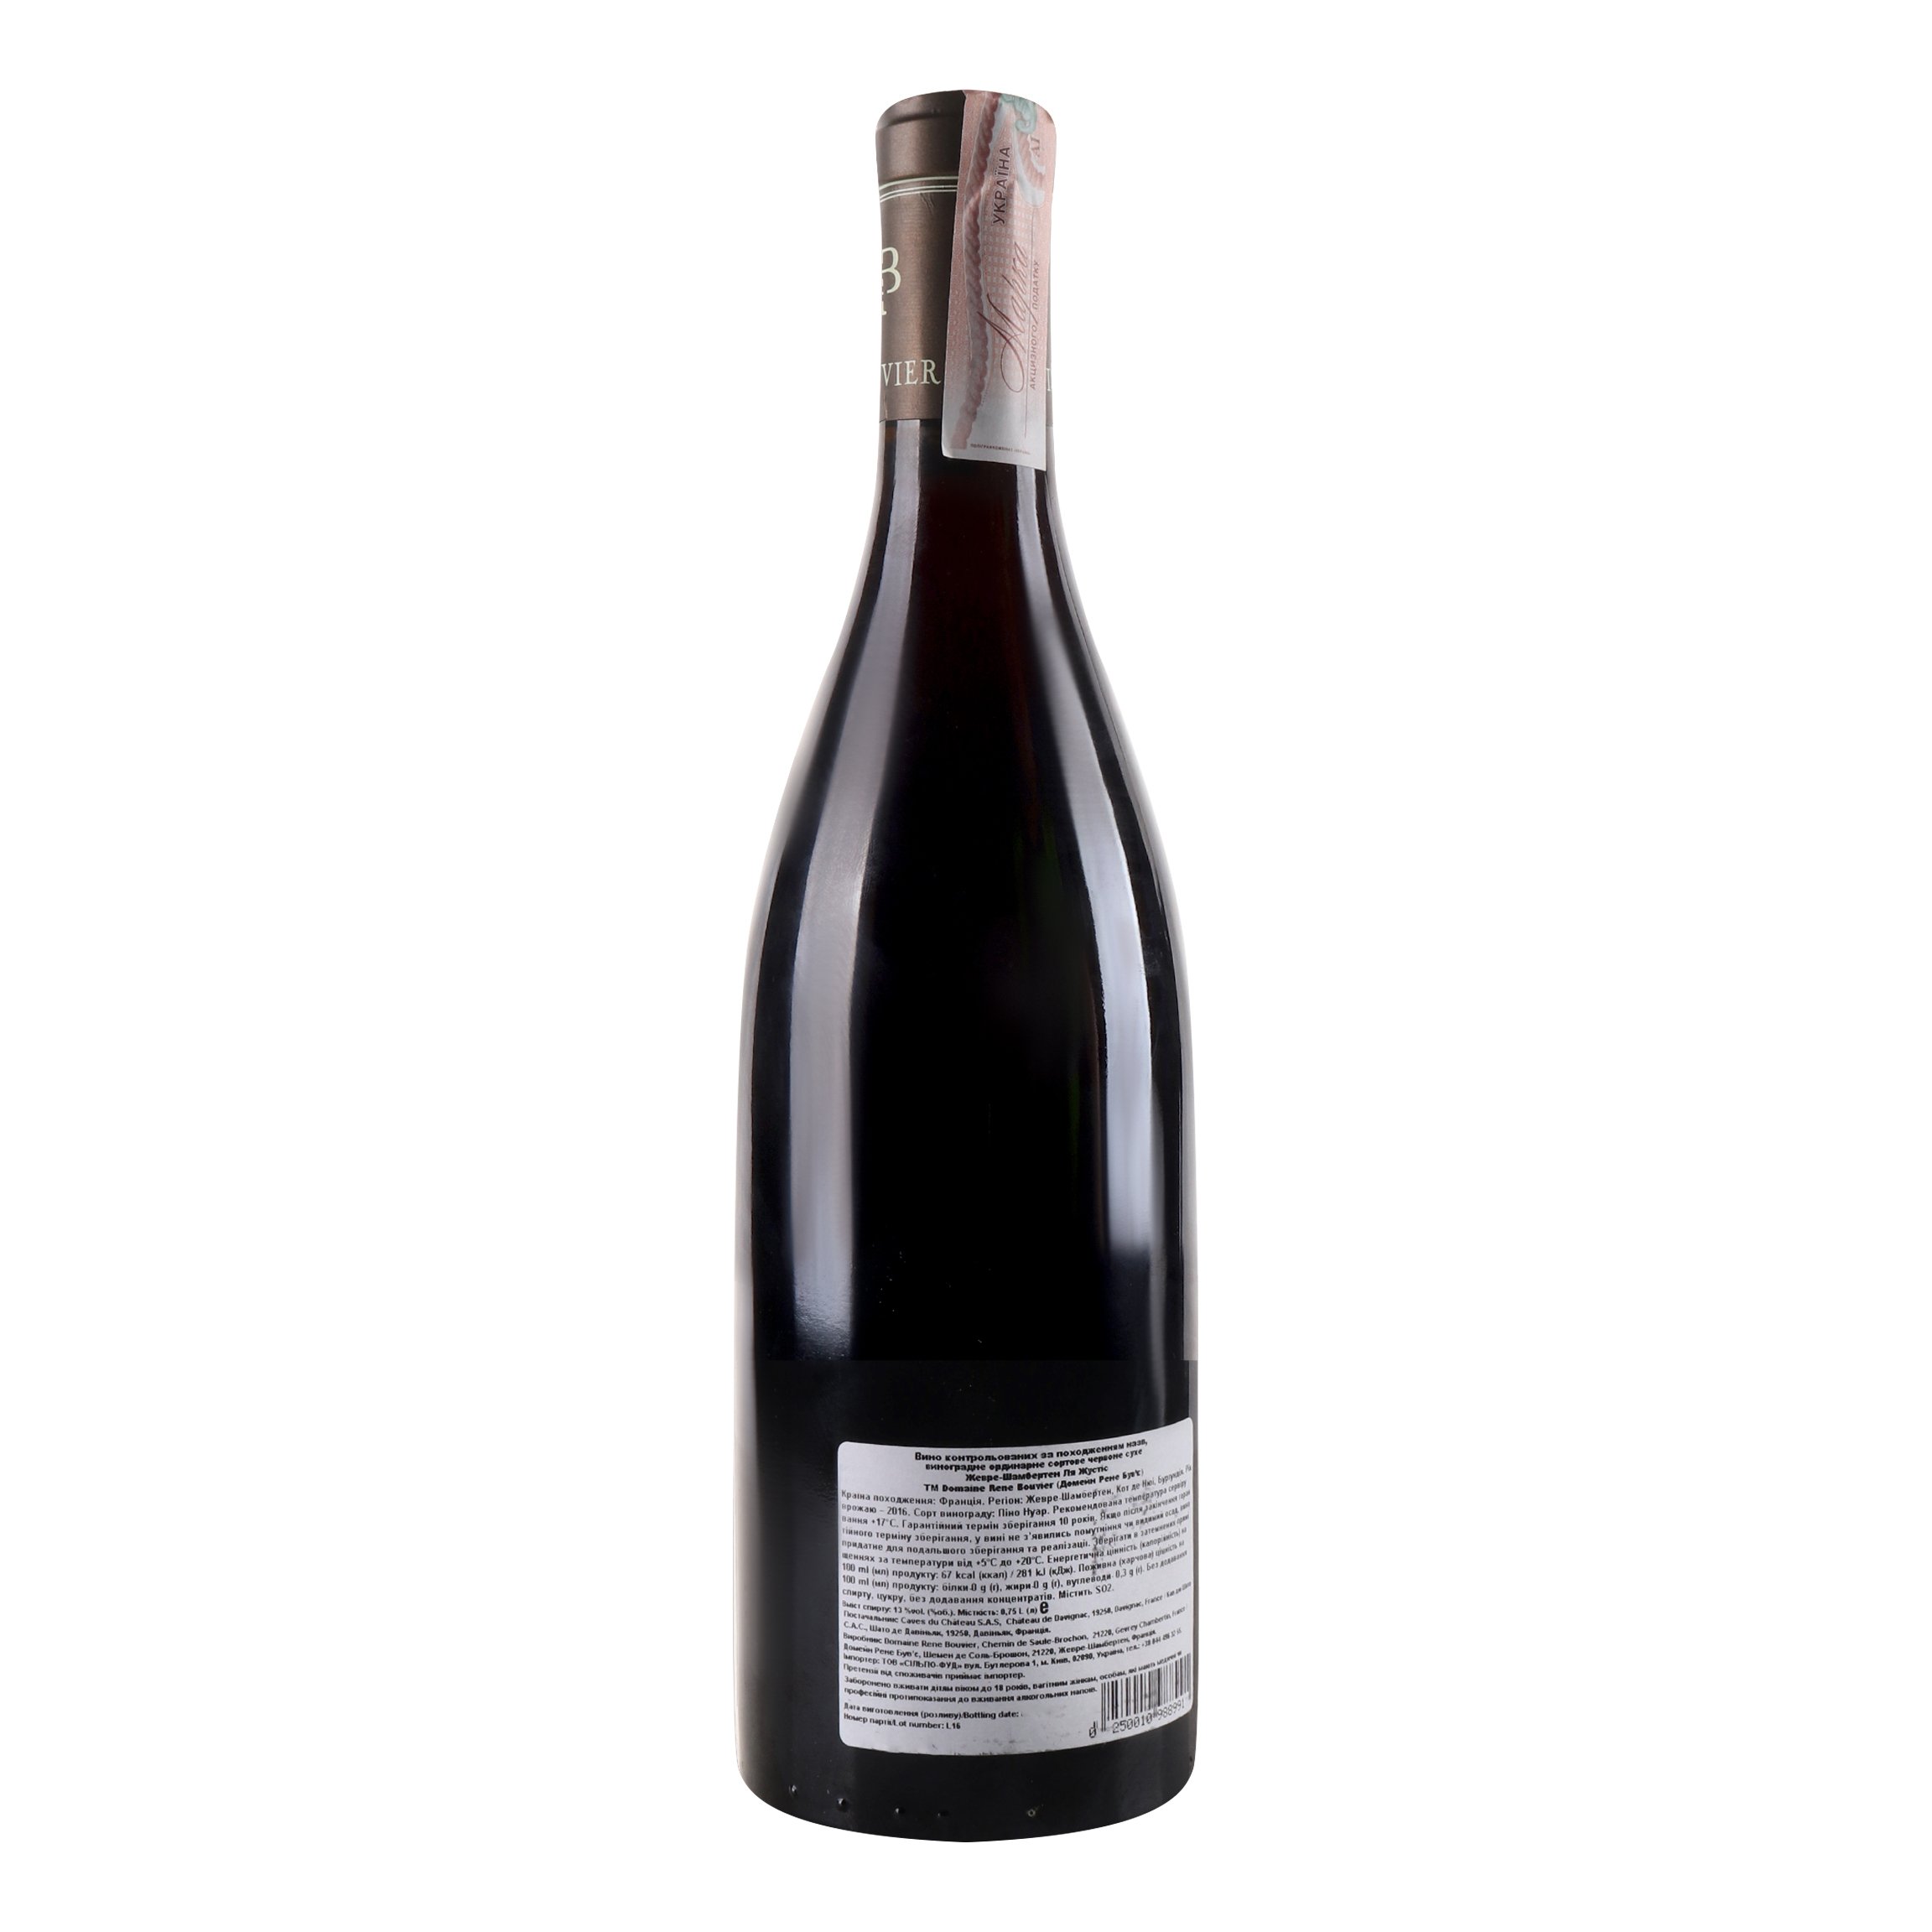 Вино Domaine Rene Bouvier Gevrey-Chambertin La Justice 2016 АОС/AOP, червоне, сухе, 13%, 0,75 л (776106) - фото 4